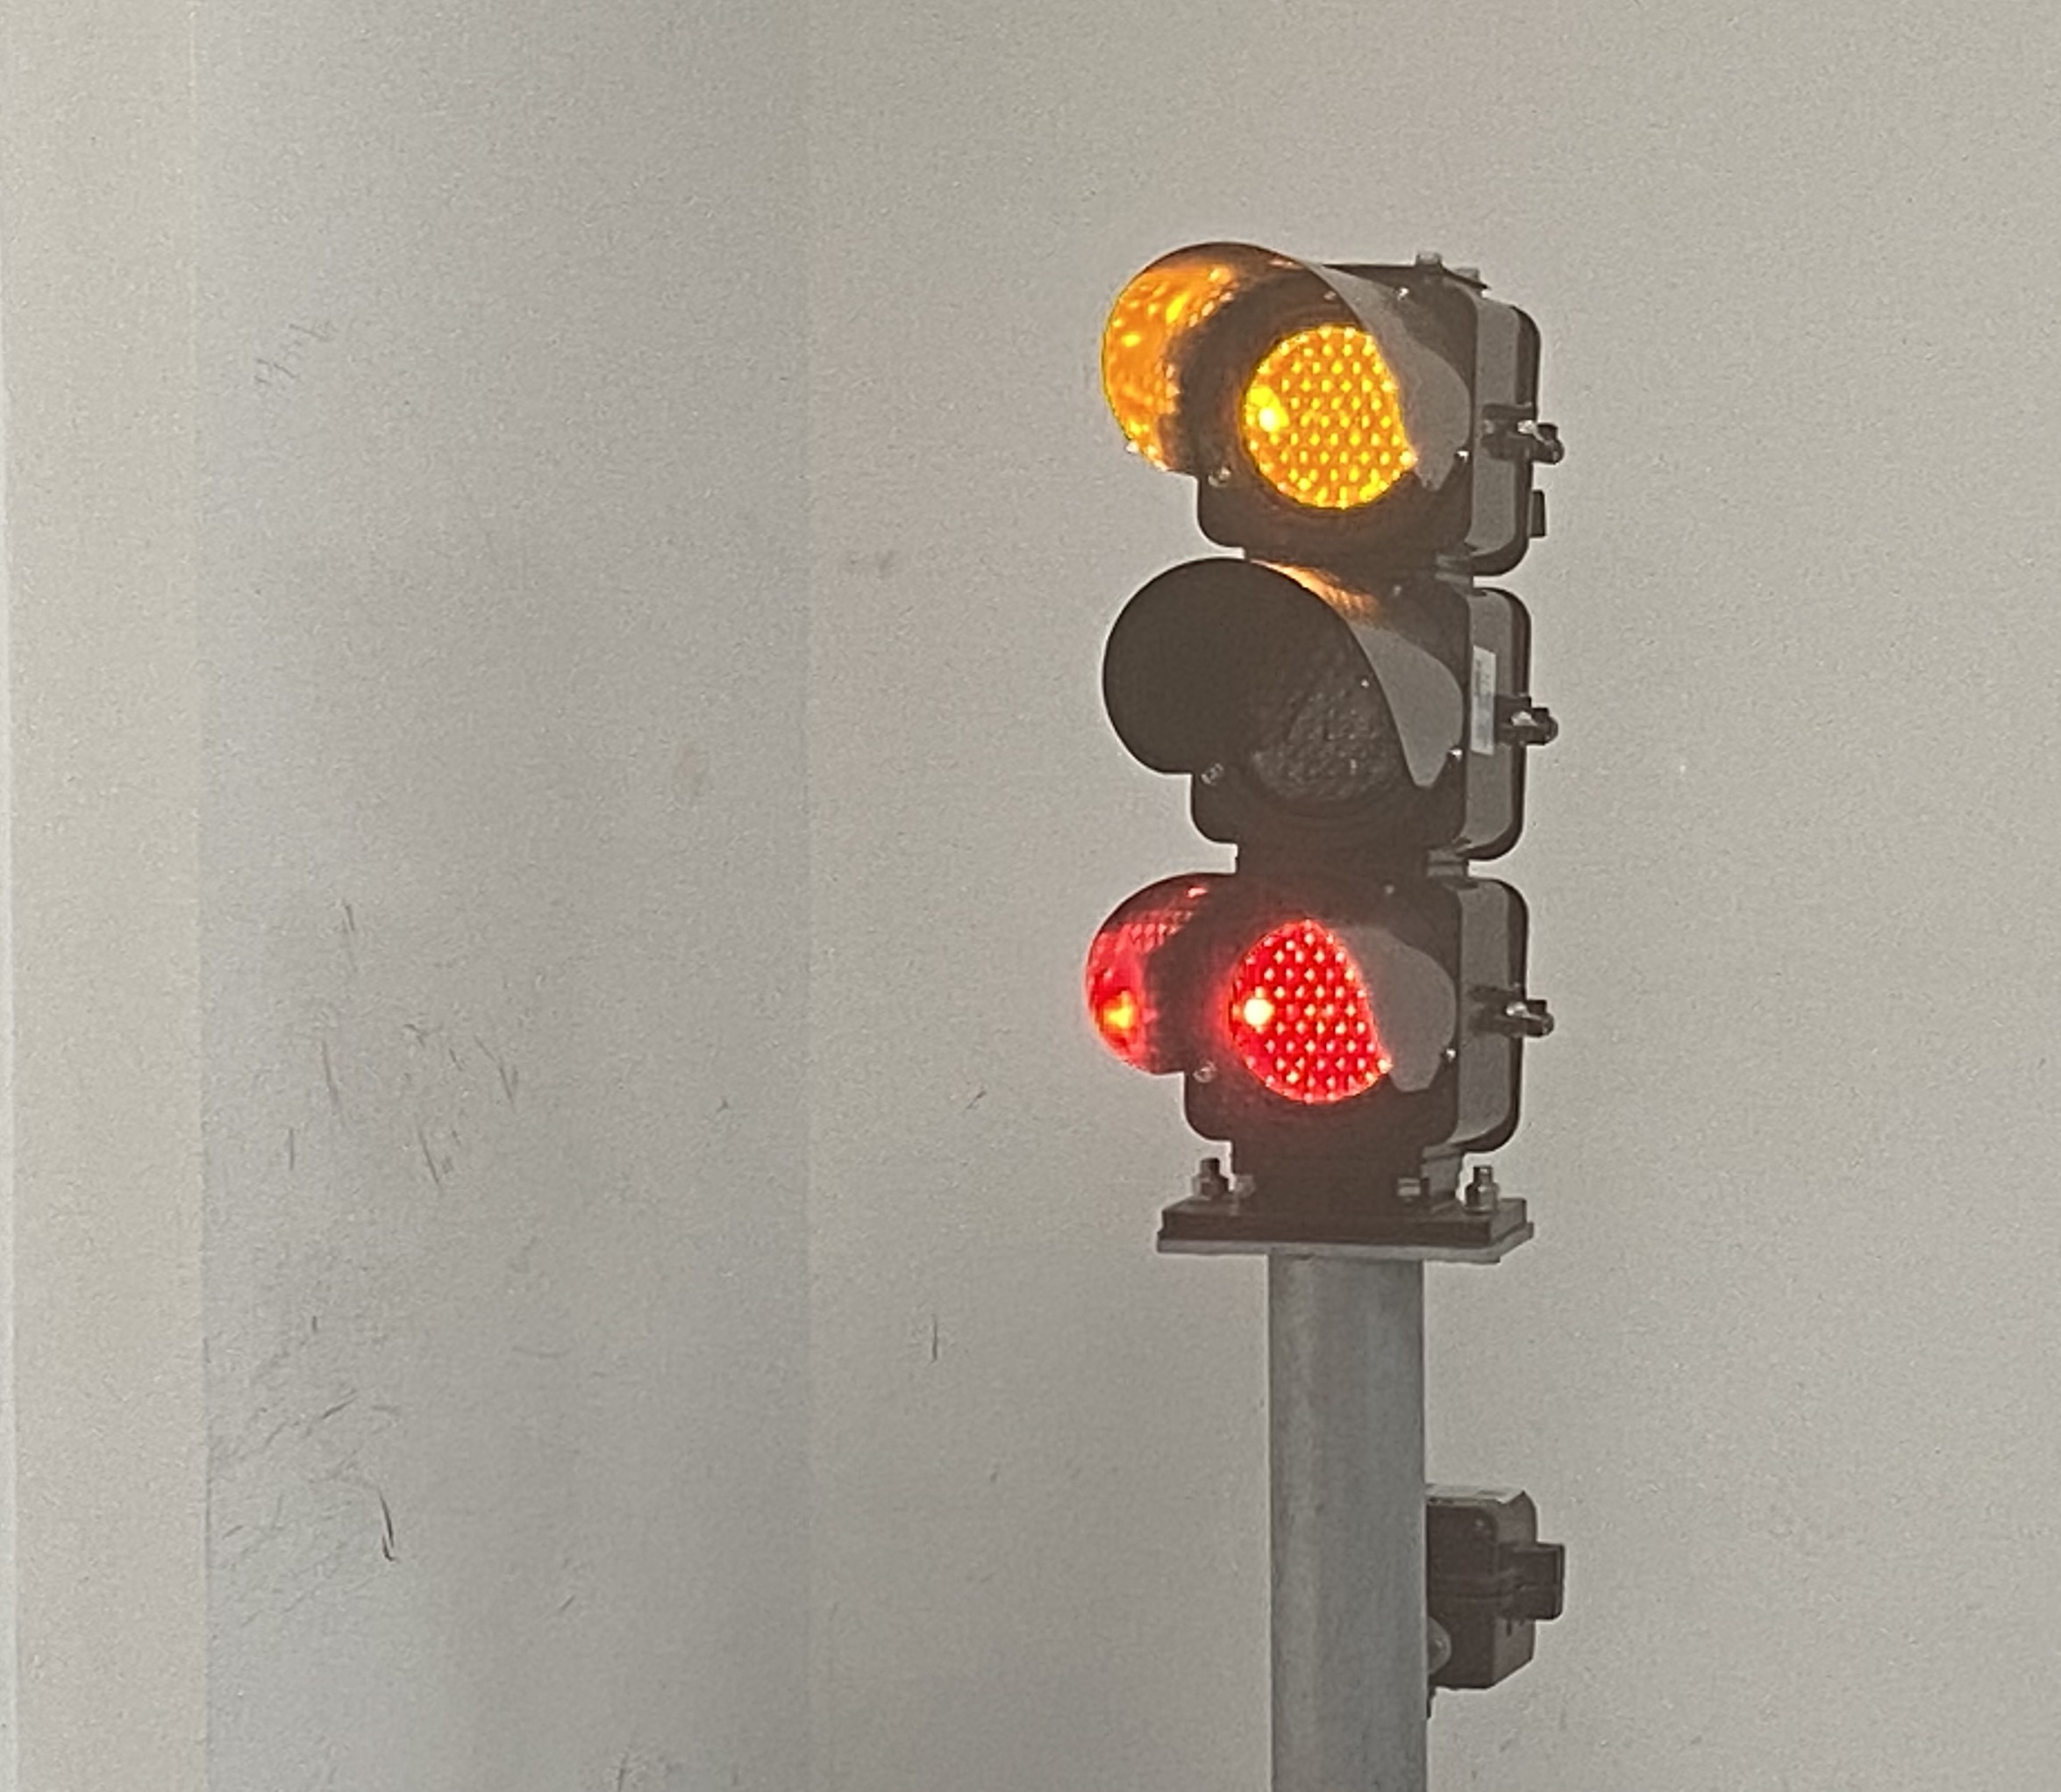 6信号灯显示黄灯+红灯.jpg